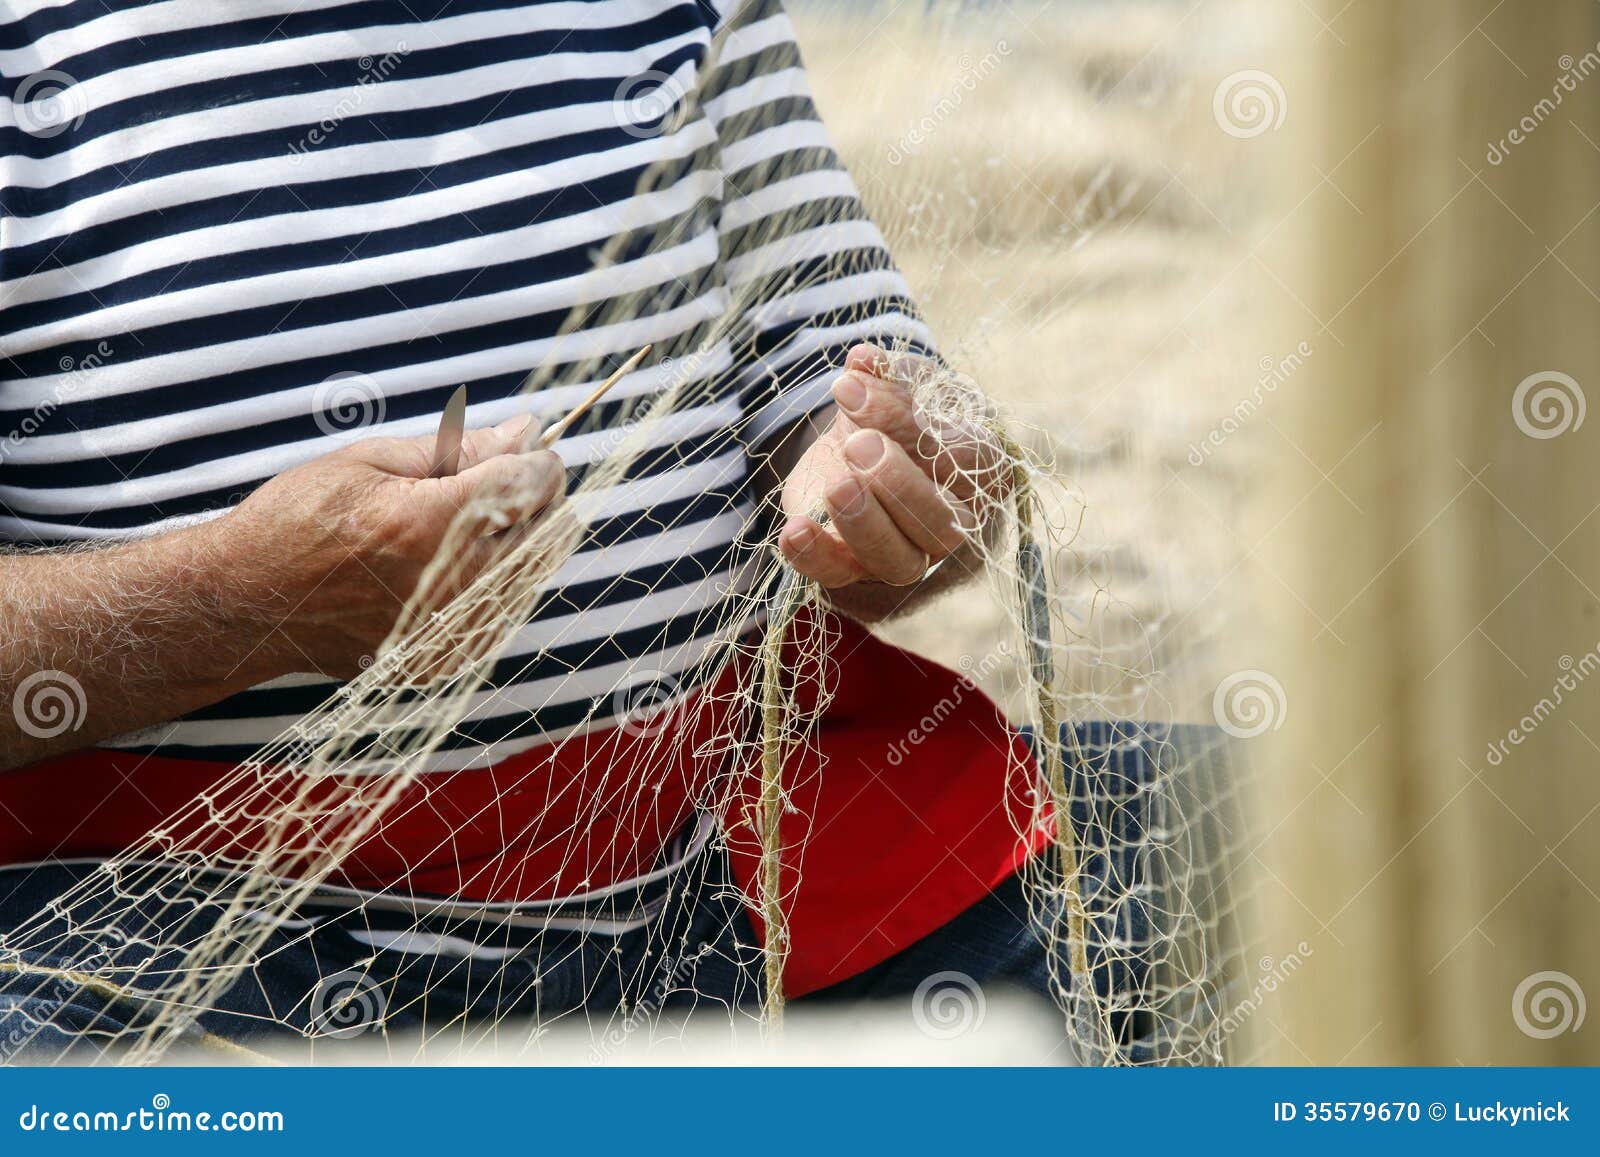 man mending nets